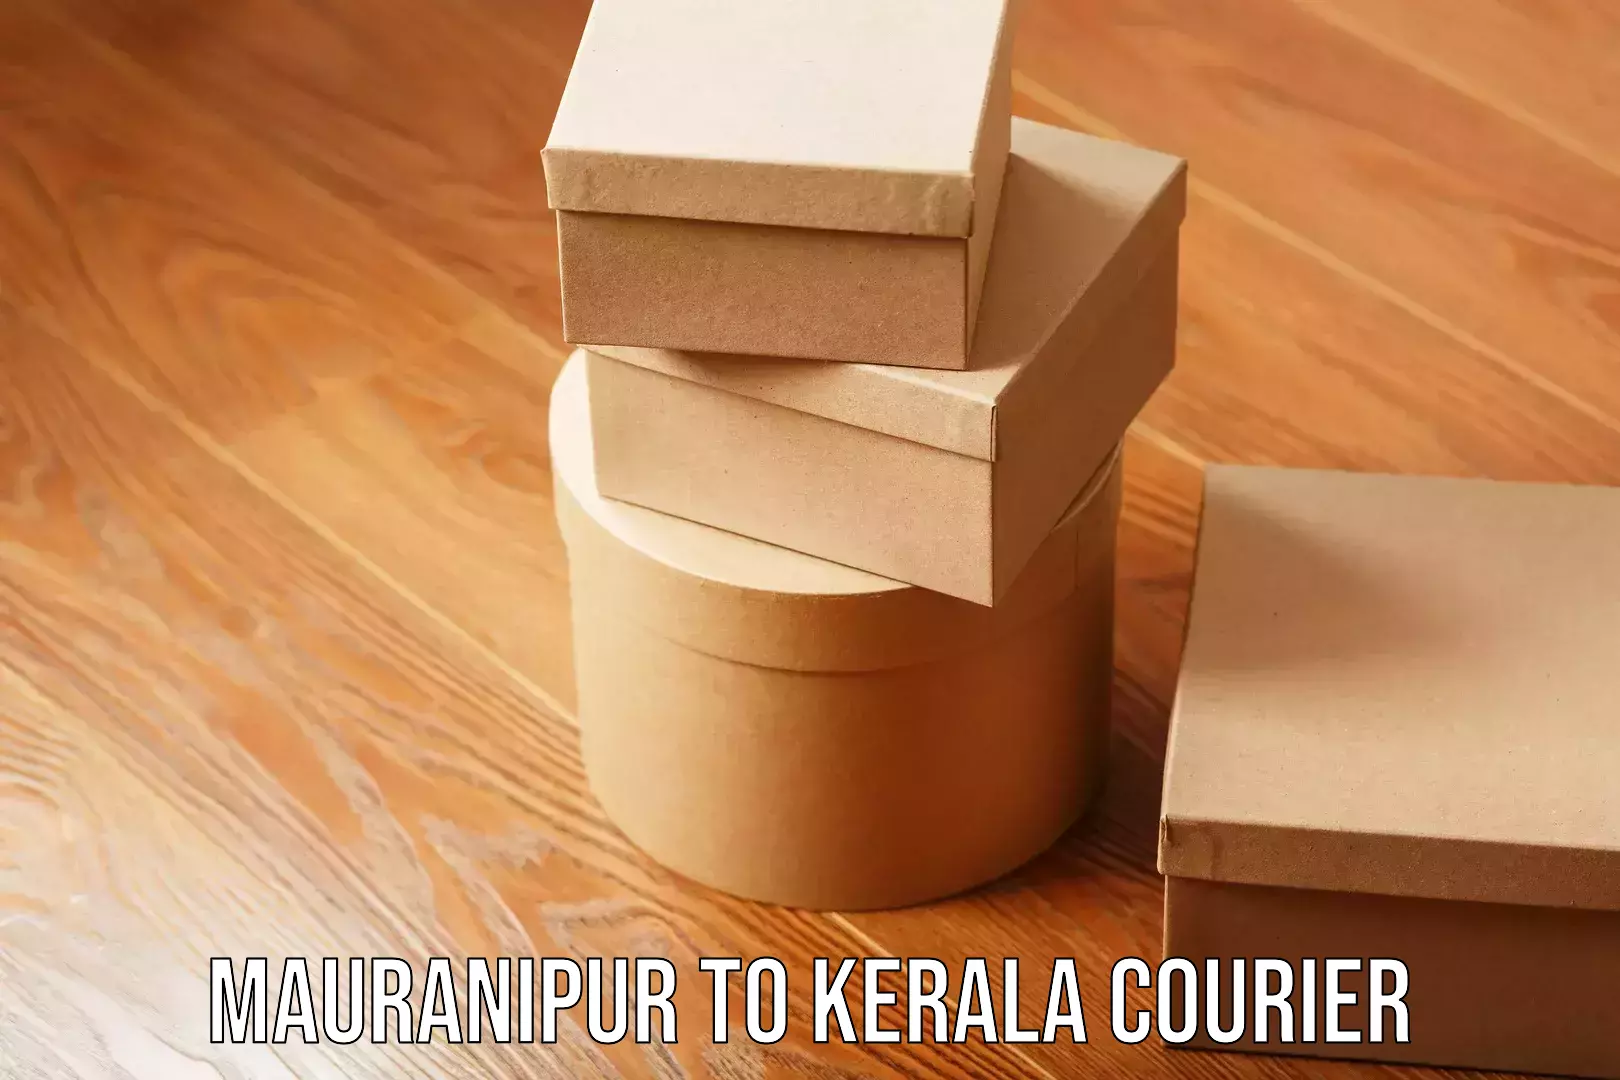 Furniture moving service Mauranipur to Kerala